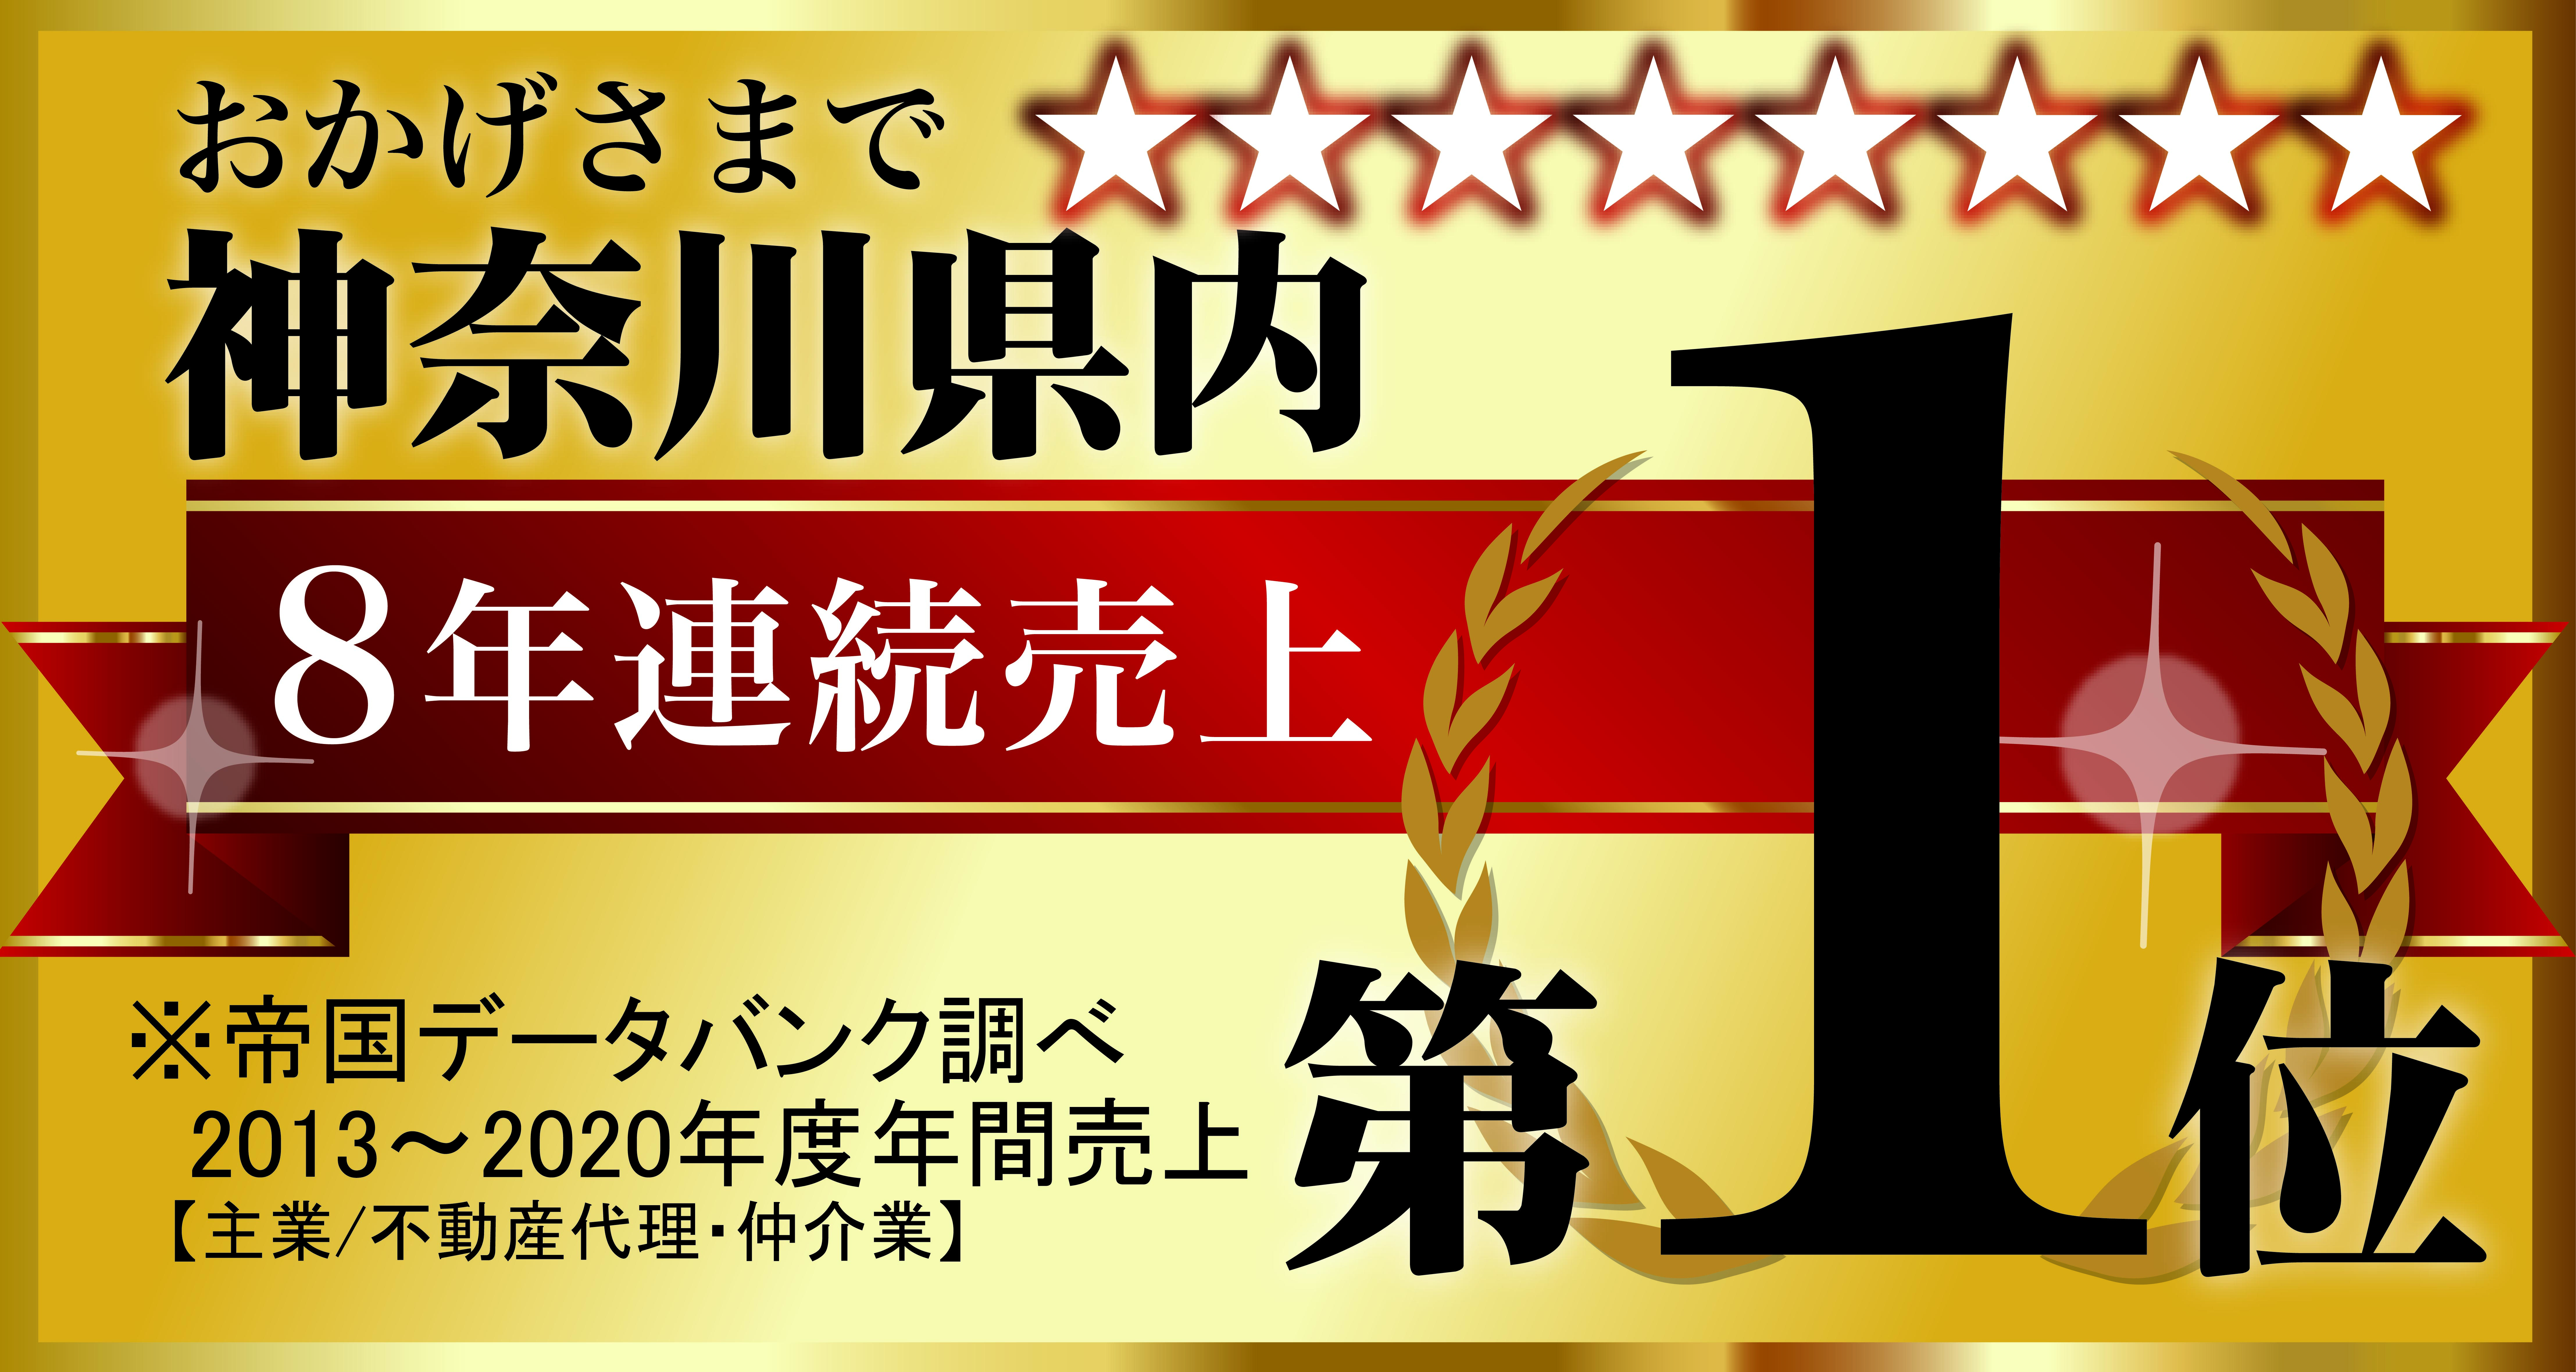 ウスイホーム8年連続神奈川県内売上1位を獲得のサブ画像1